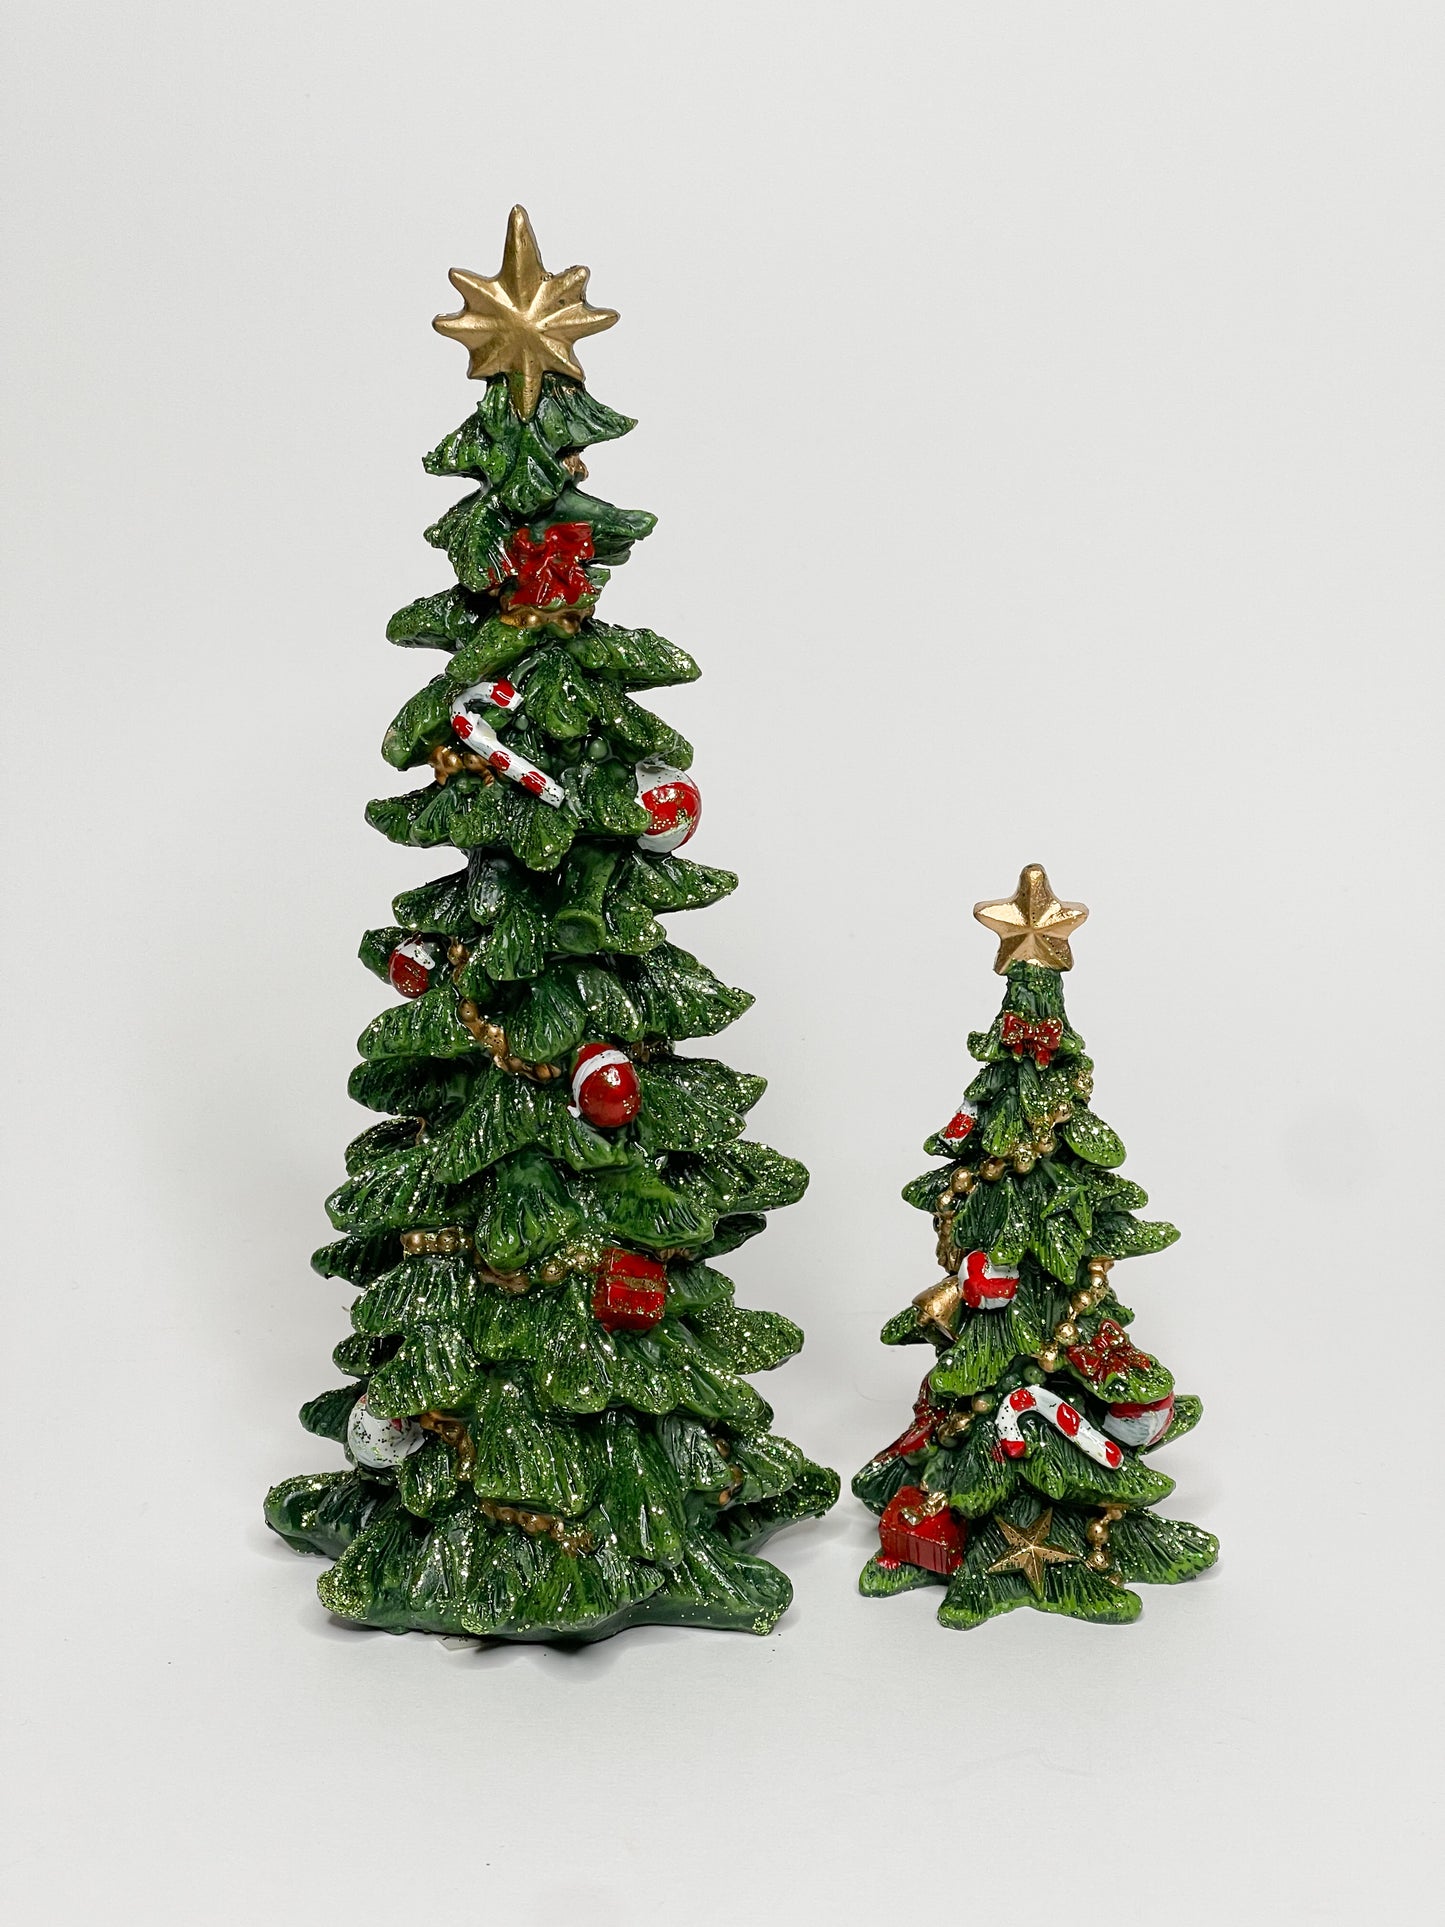 Kalėdinė dekoracija "Eglutė" 20cm.